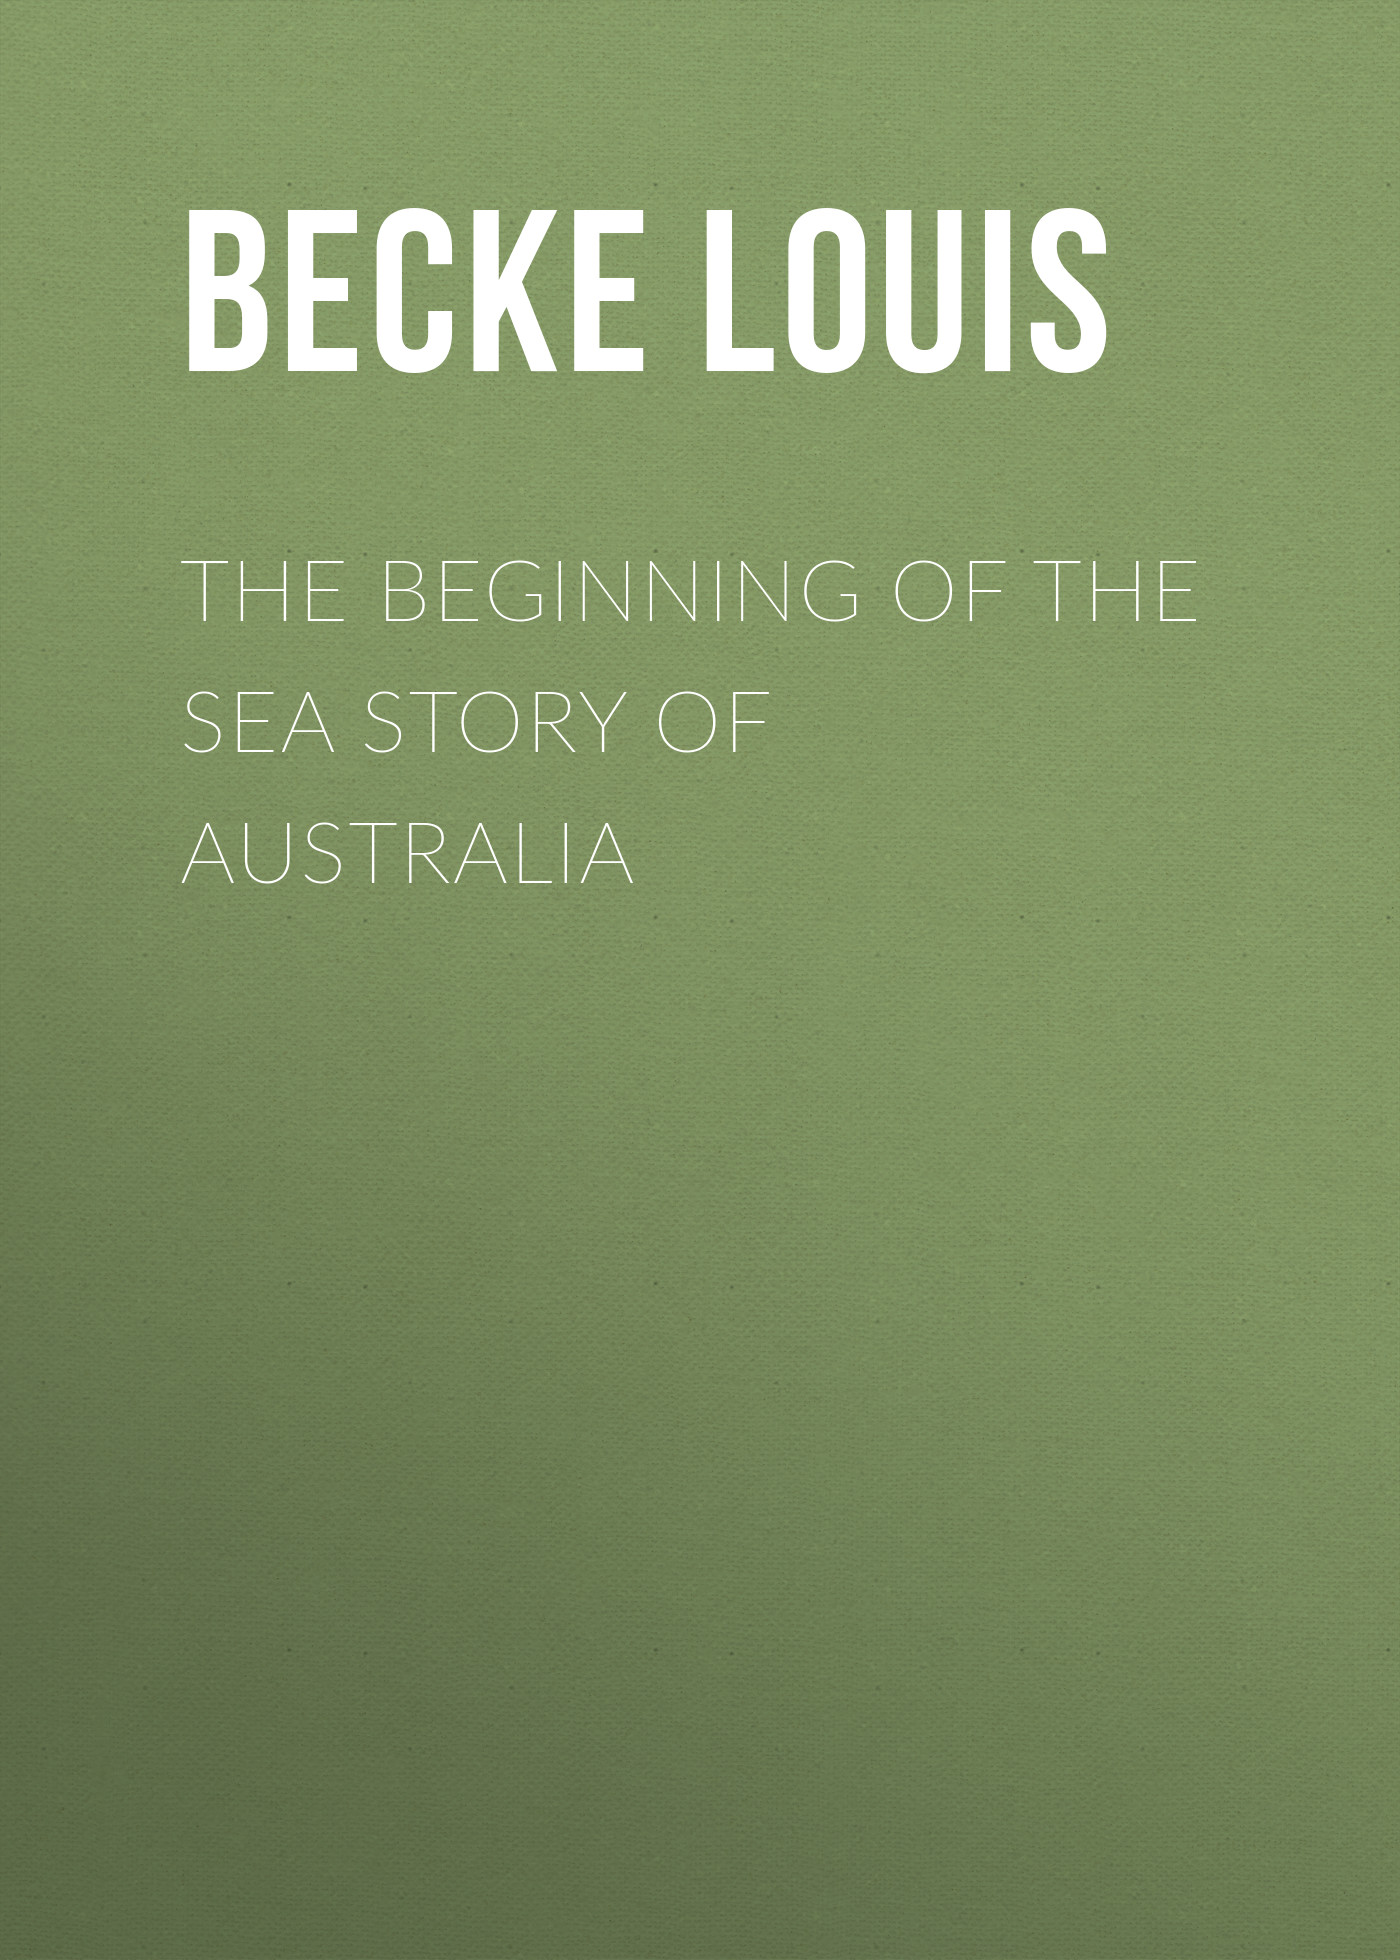 Книга The Beginning Of The Sea Story Of Australia из серии , созданная Louis Becke, может относится к жанру Зарубежная классика, Литература 19 века, Зарубежная старинная литература. Стоимость электронной книги The Beginning Of The Sea Story Of Australia с идентификатором 36367070 составляет 0 руб.